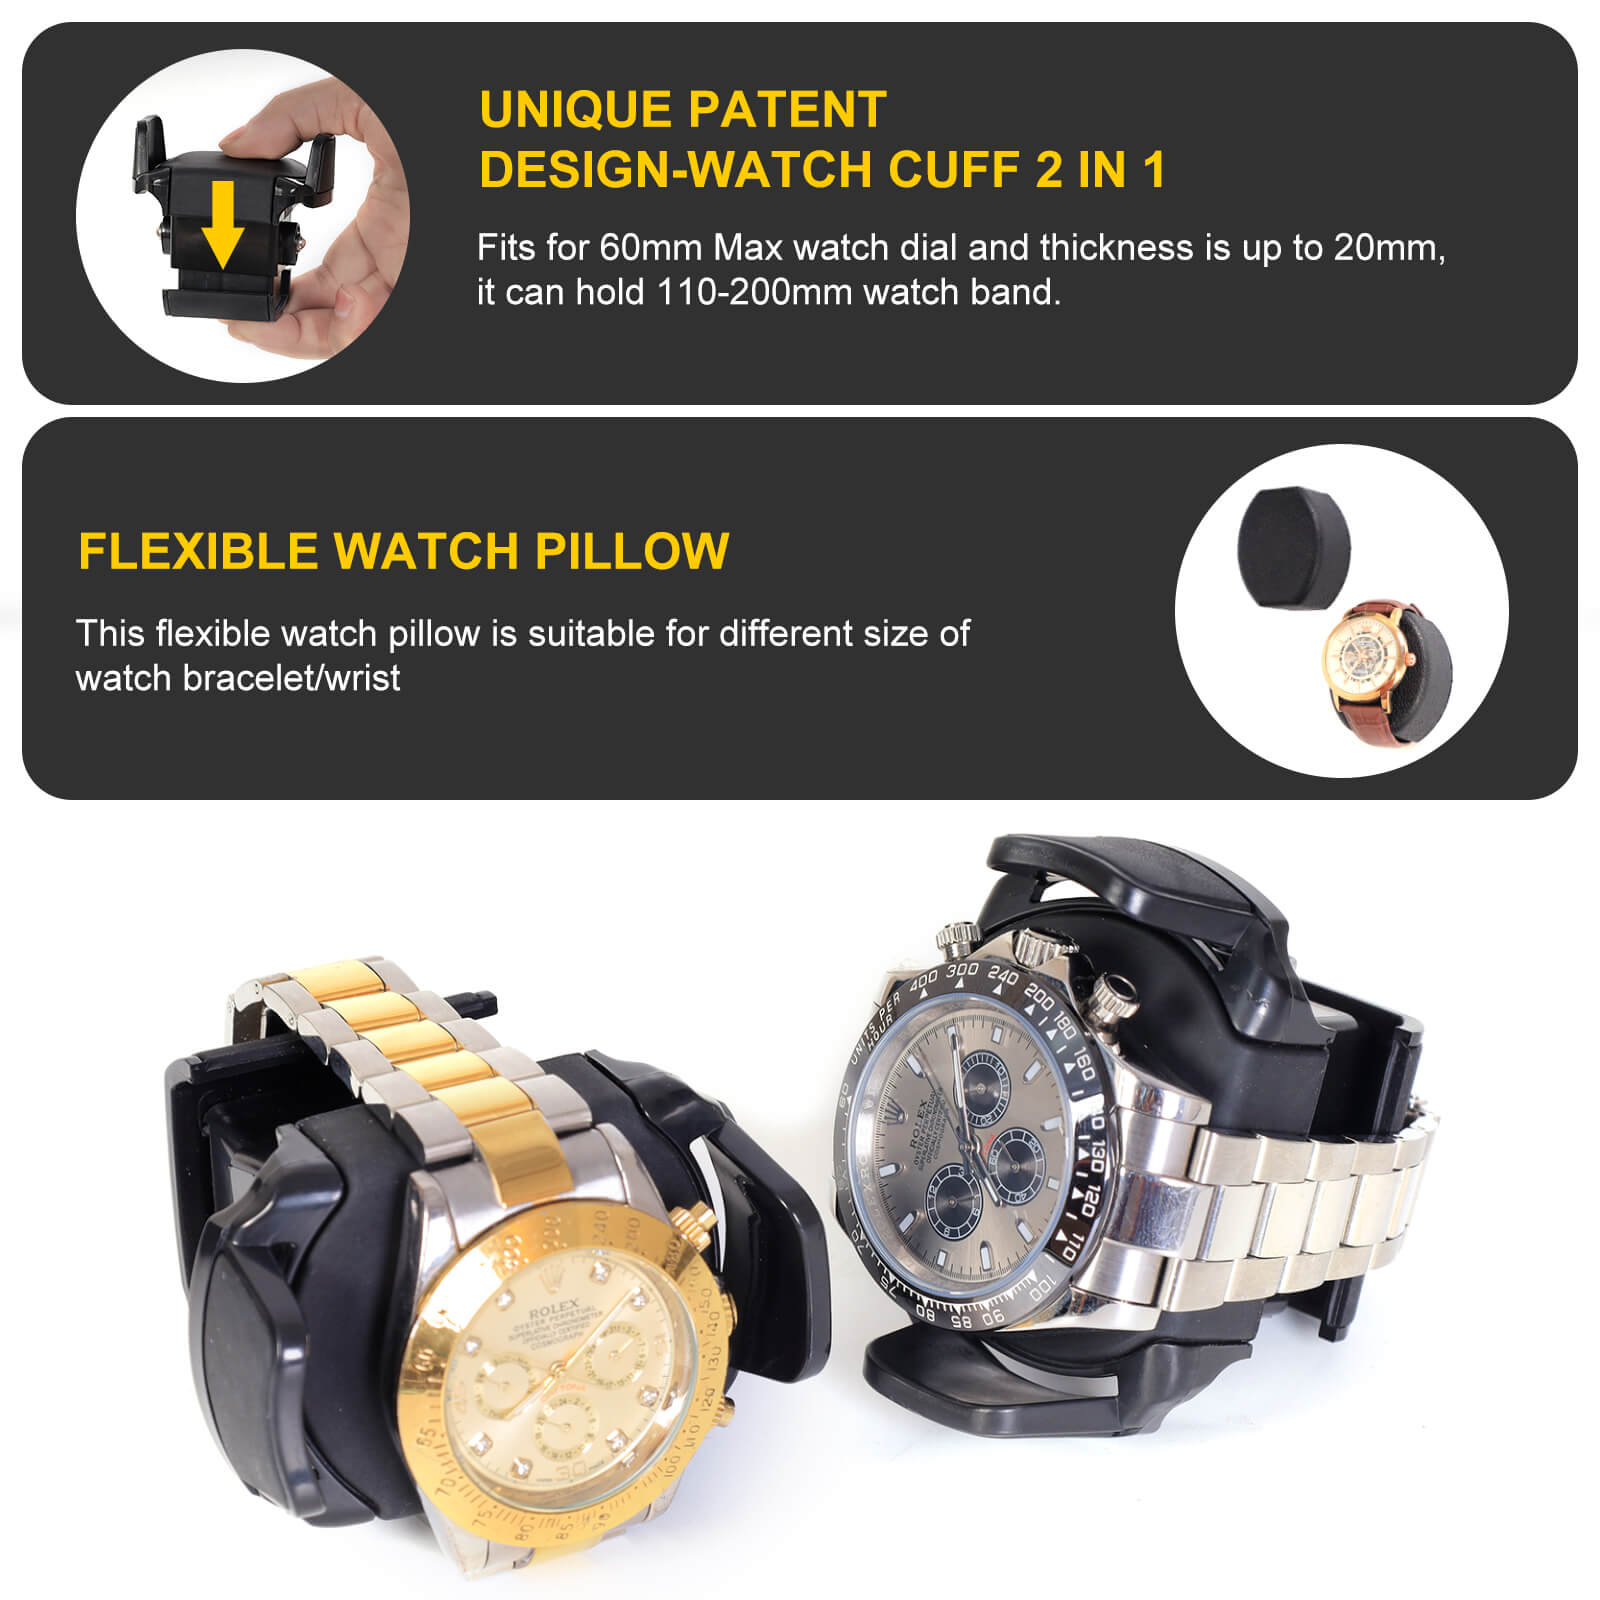 Remontoirs de montres compacts pour 8 montres avec vitrine d'organisation de 6 montres - Noir